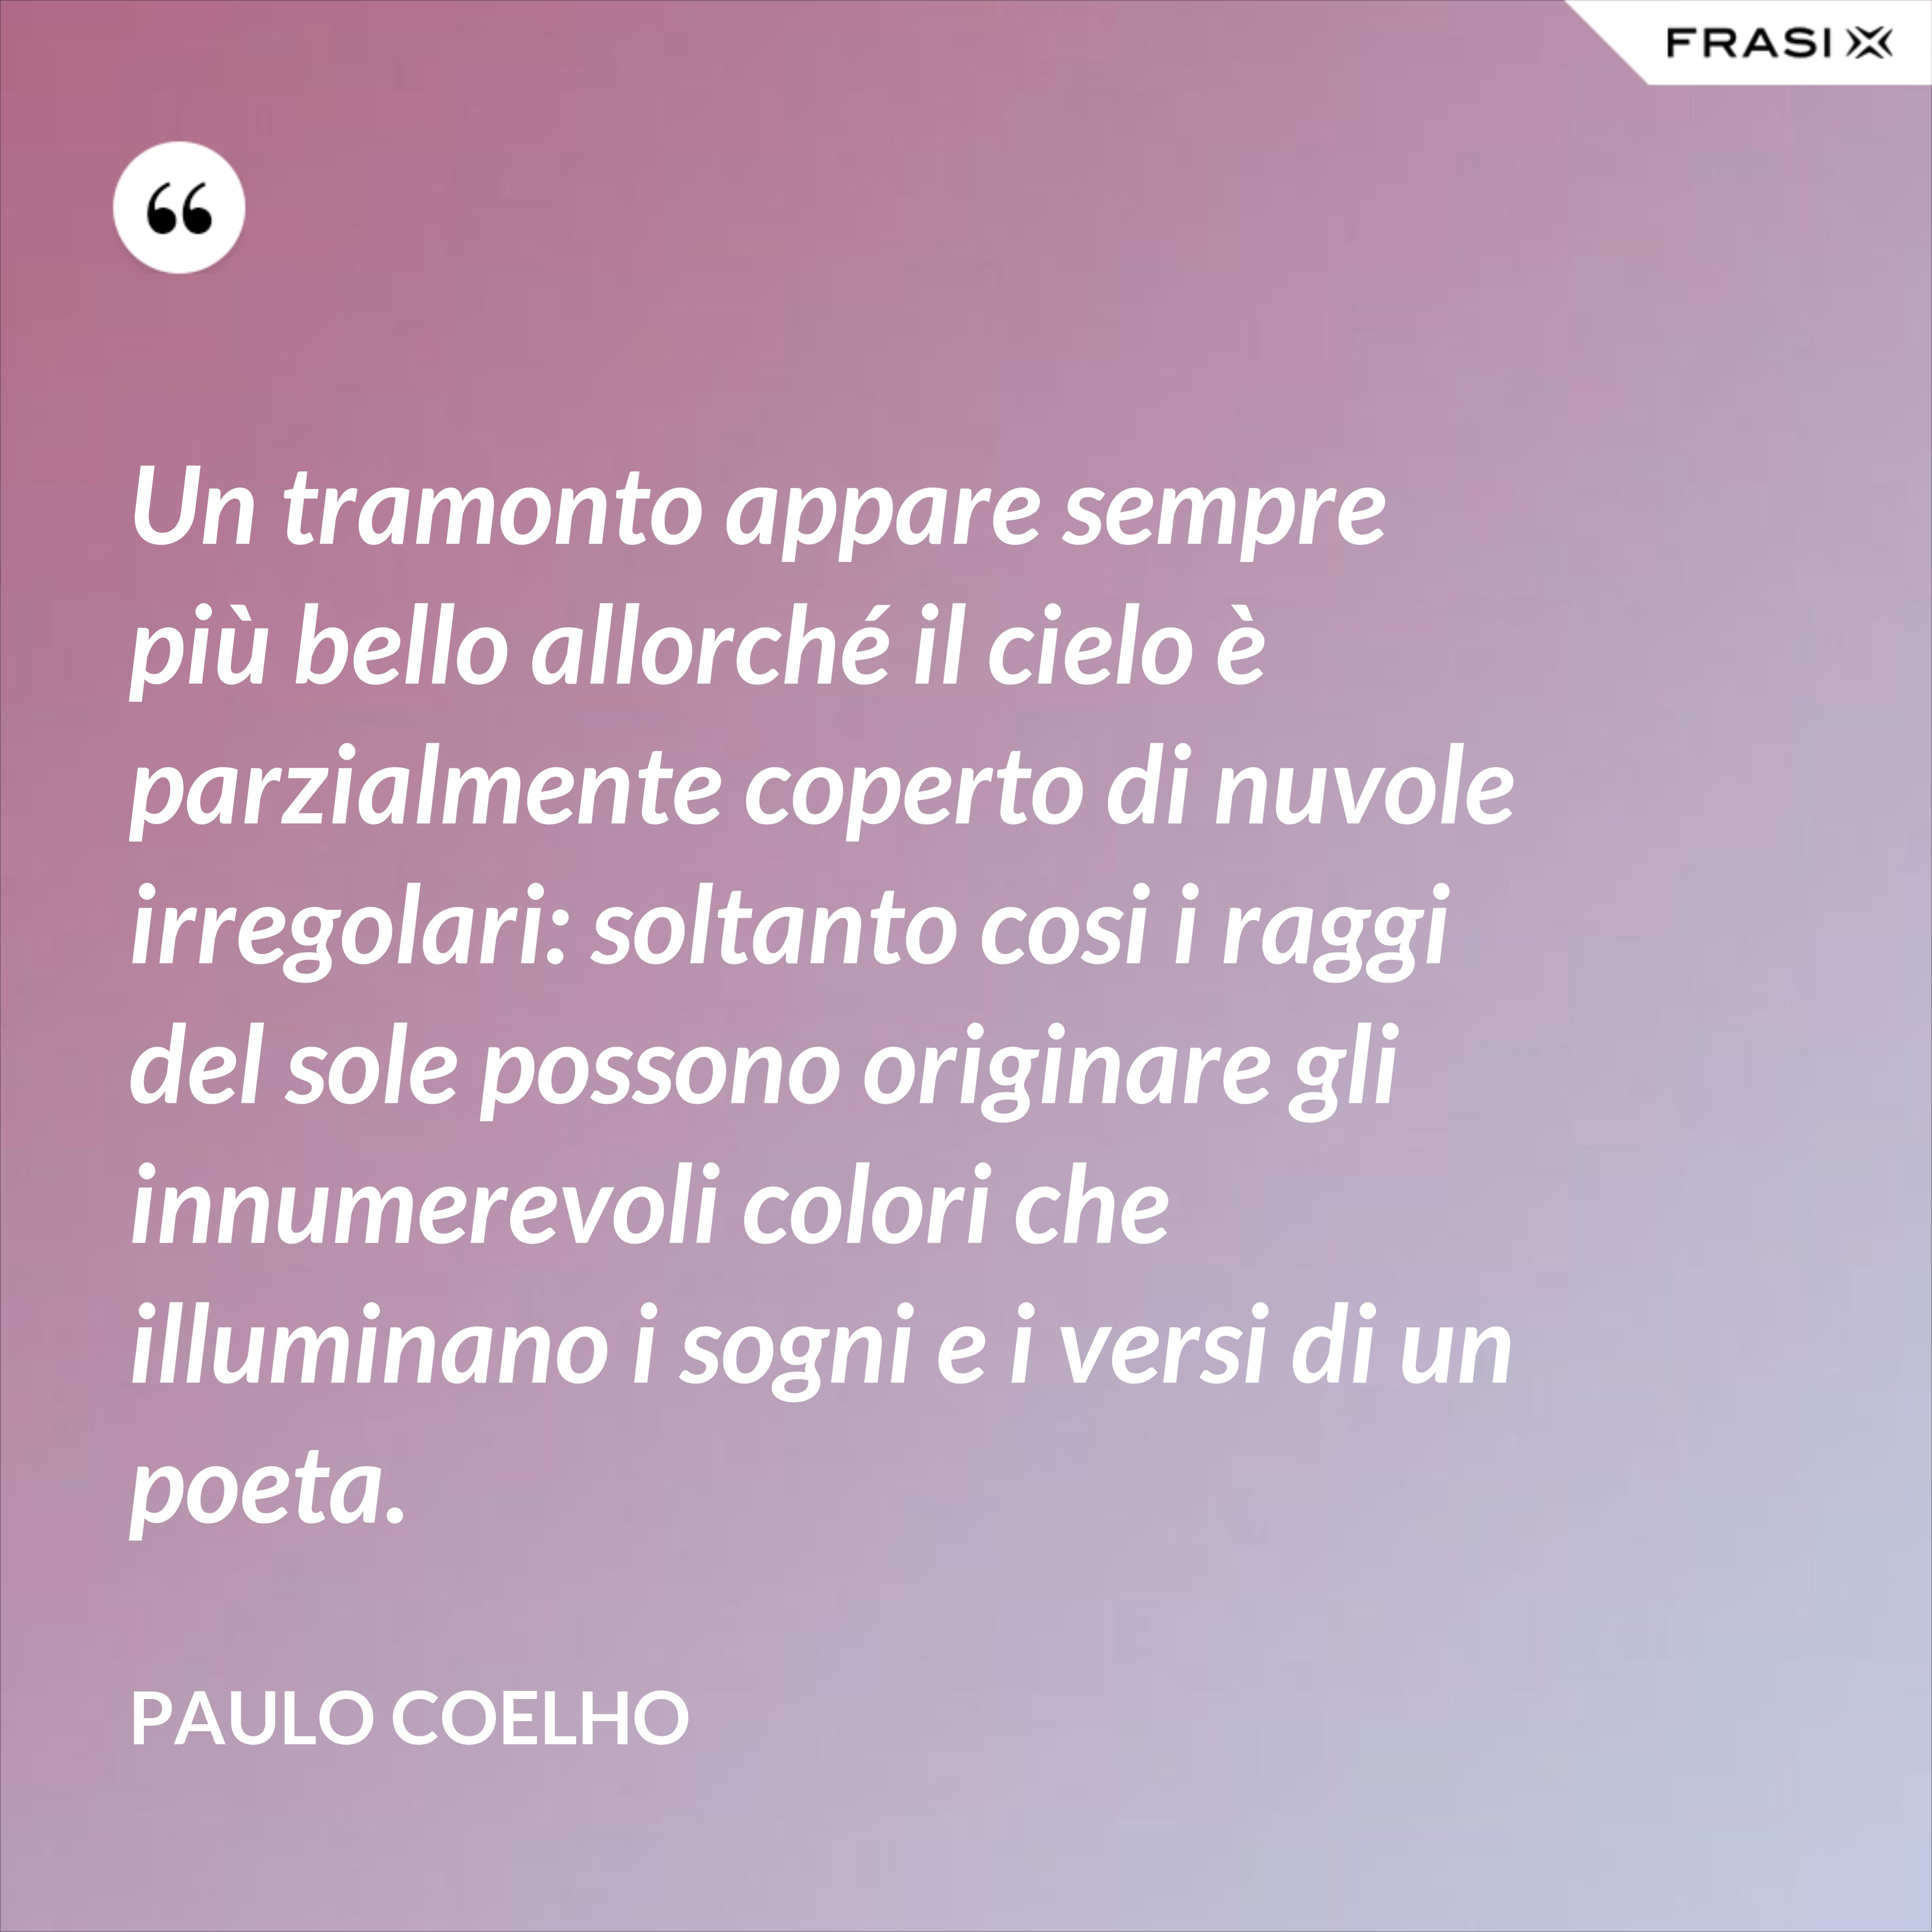 Un tramonto appare sempre più bello allorché il cielo è parzialmente coperto di nuvole irregolari: soltanto cosi i raggi del sole possono originare gli innumerevoli colori che illuminano i sogni e i versi di un poeta. - Paulo Coelho